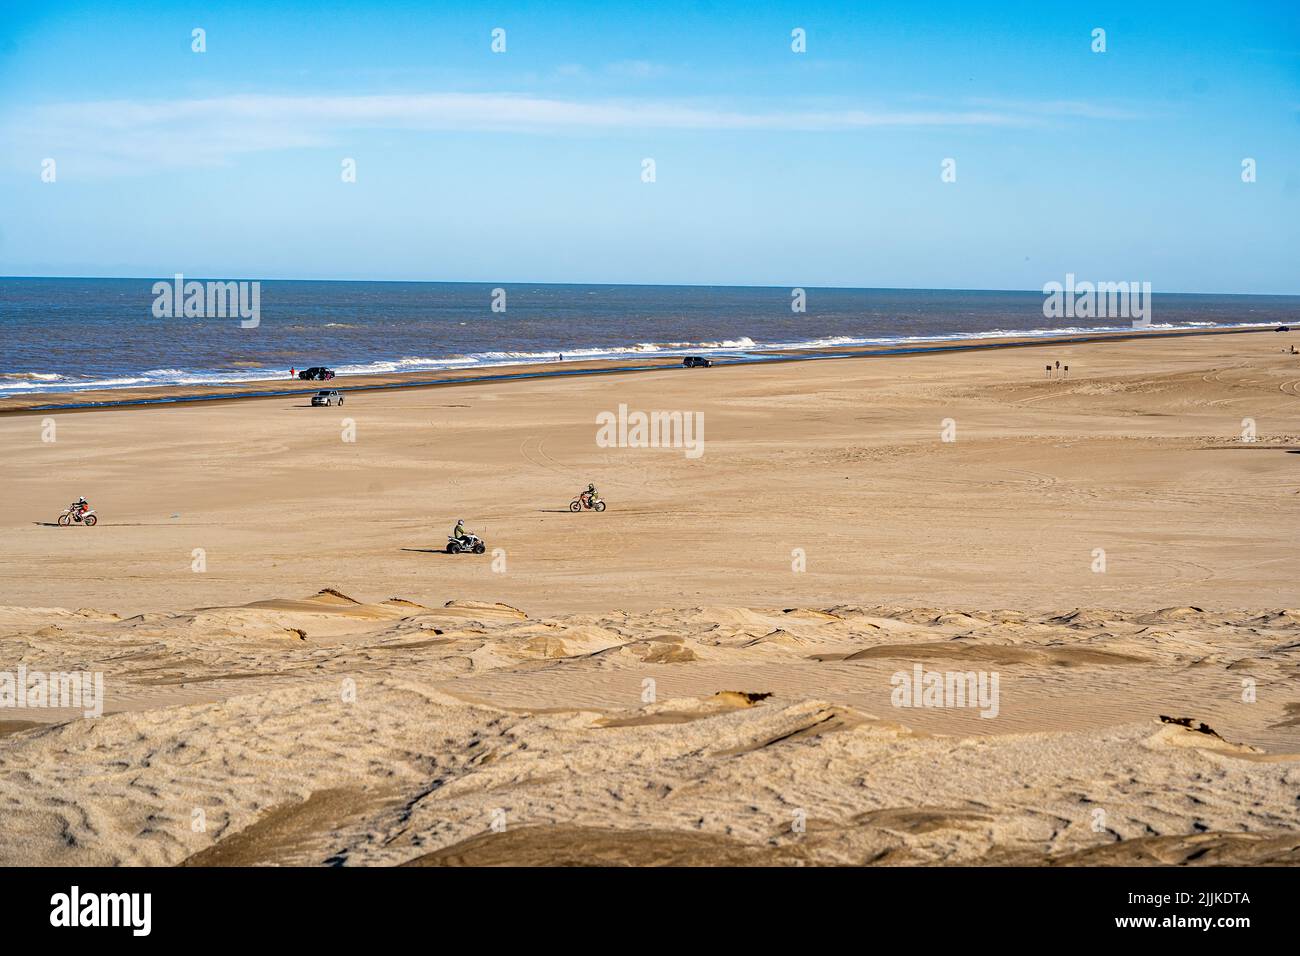 Piano generale di una spiaggia dove si può vedere la sabbia e il mare, in una giornata soleggiata e limpida Foto Stock